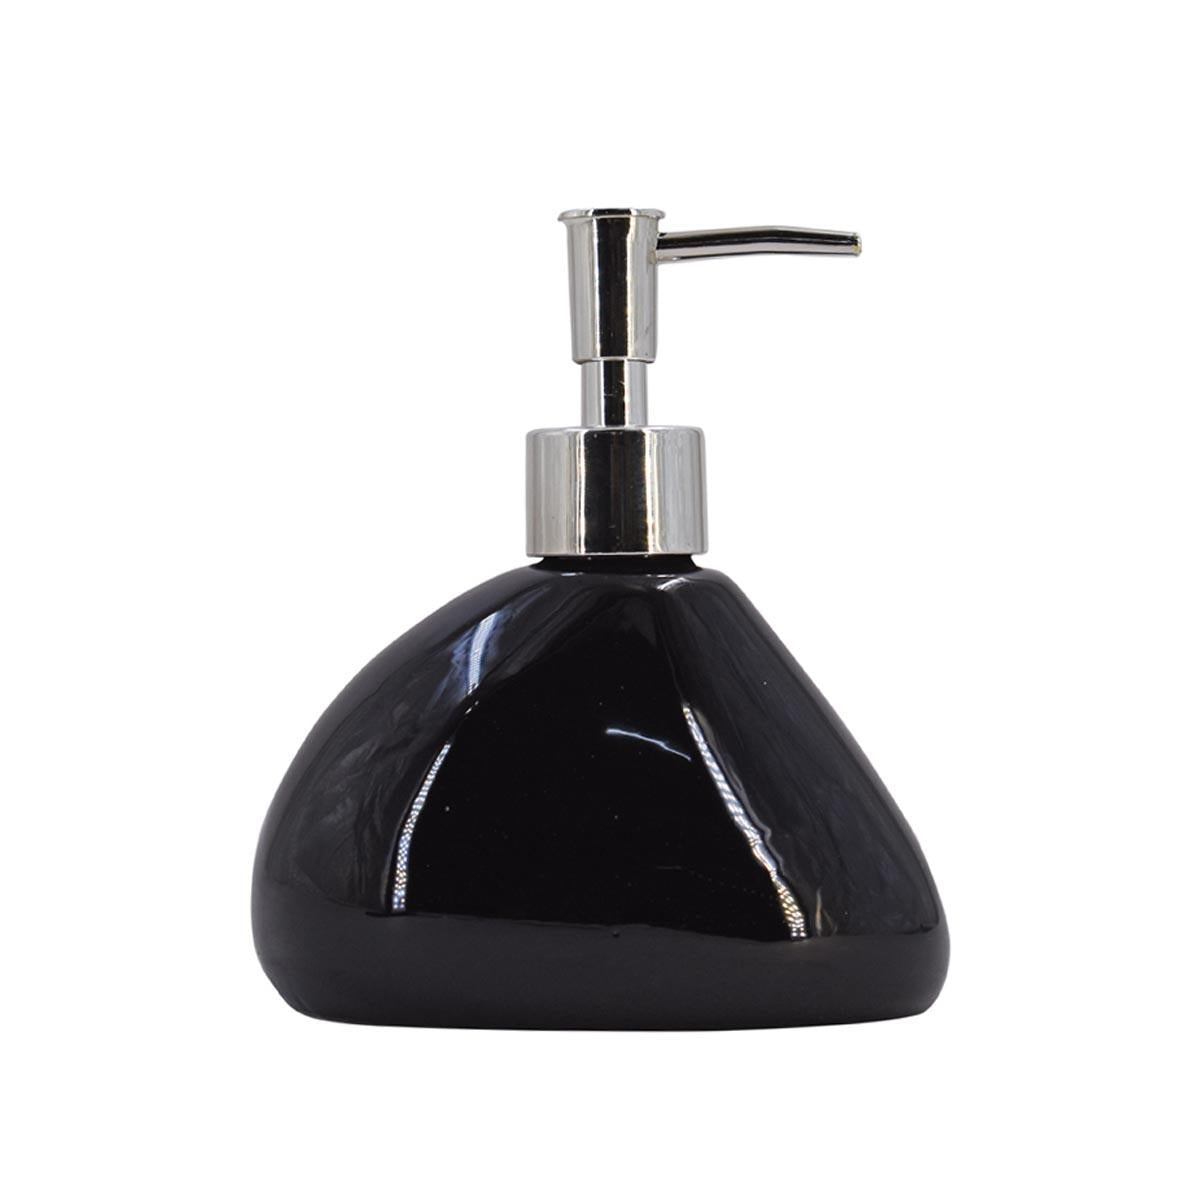 Kookee Ceramic Soap Dispenser for Bathroom handwash, refillable pump bottle for Kitchen hand wash basin, Set of 1, Black (7969)